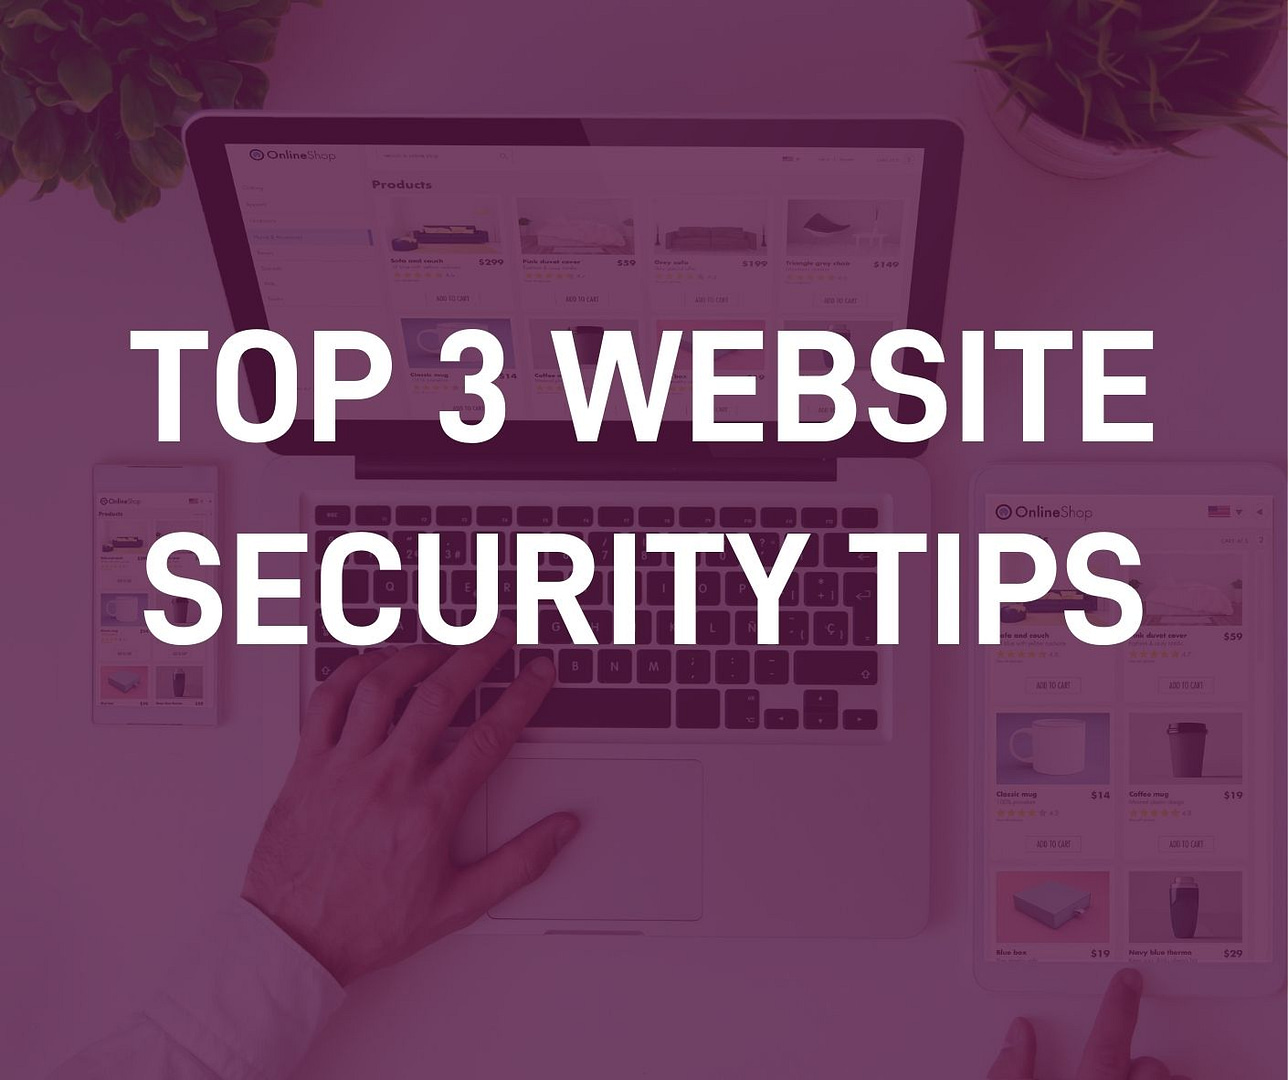 Top 3 website security tips